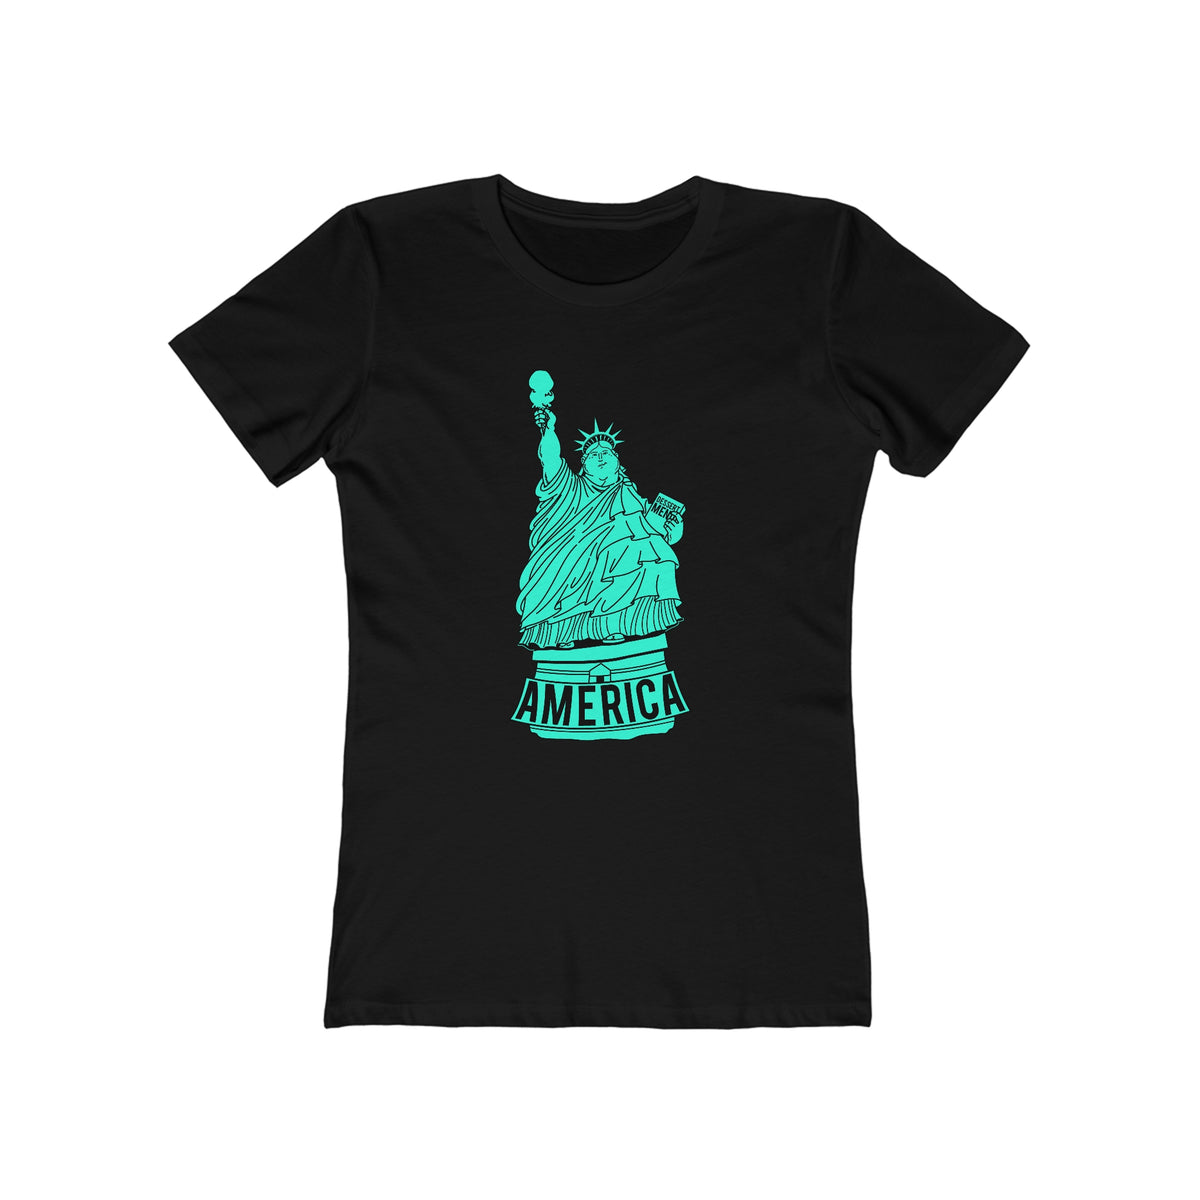 America - Women’s T-Shirt